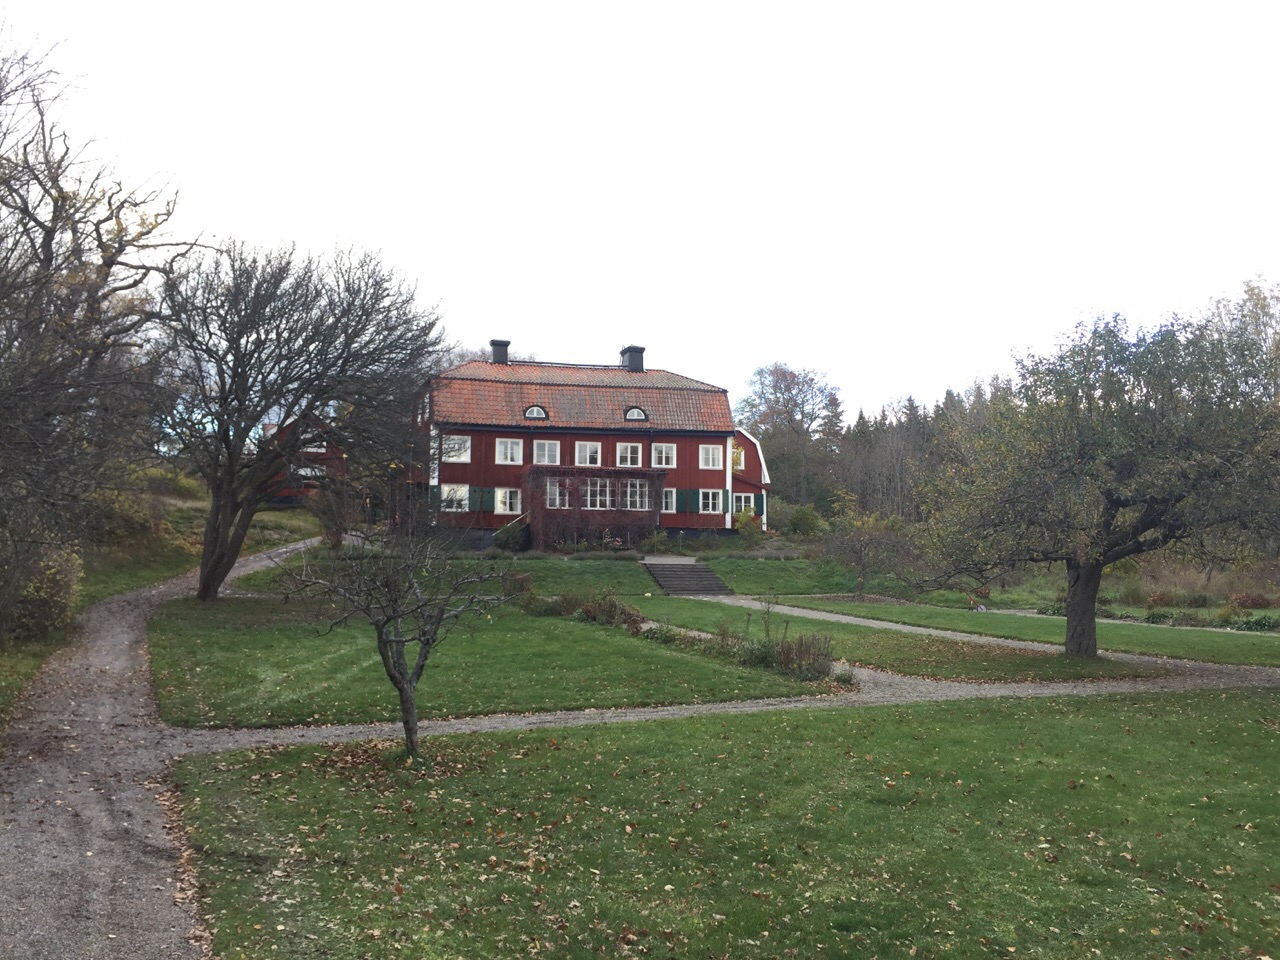 Gården Västra Ekedal med tillhörande parkanläggning, 2018